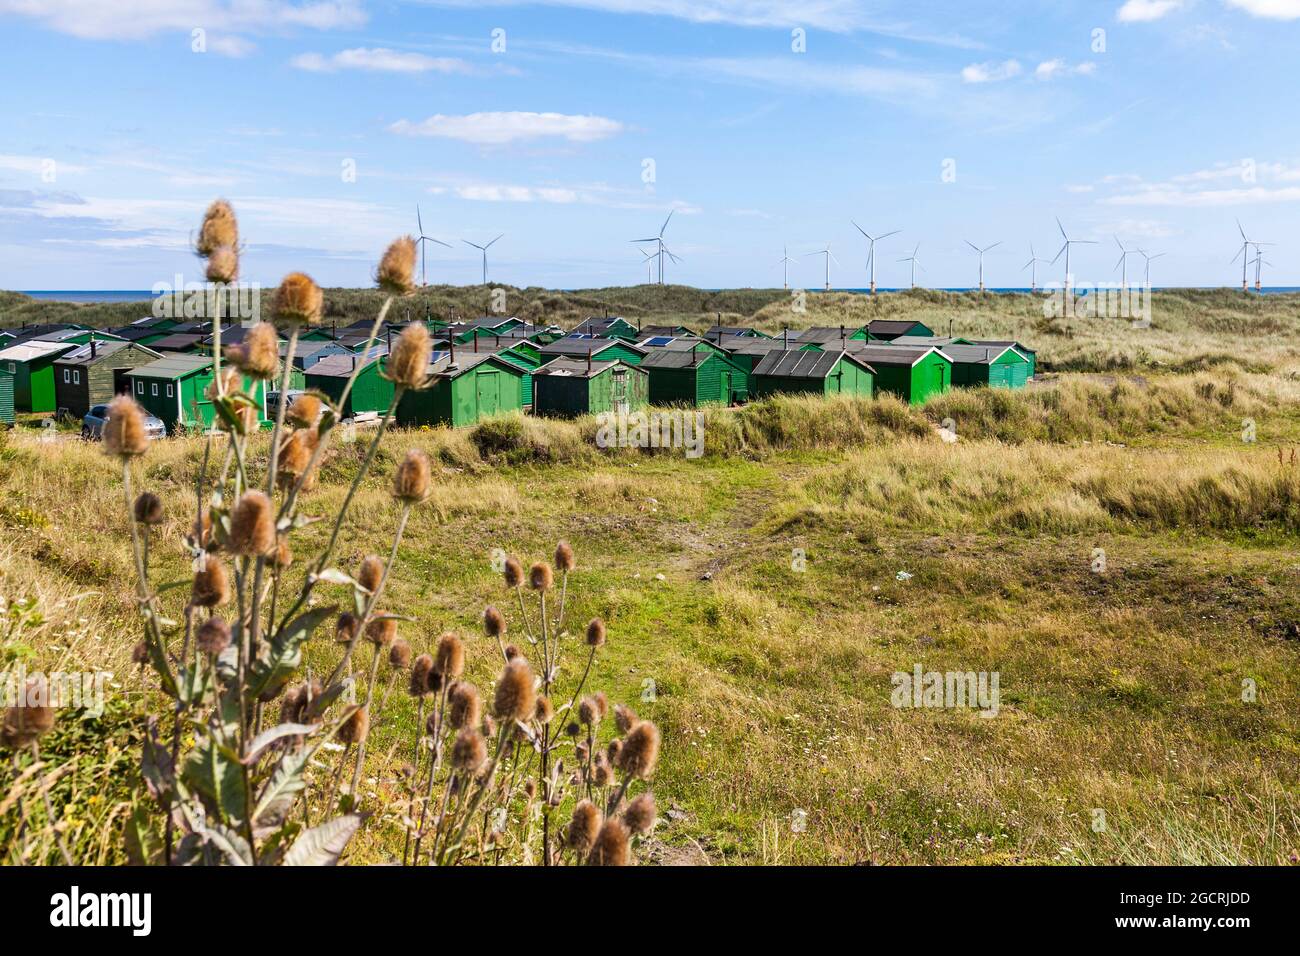 Die fishermens Hütten am South Gare, Redcar, England, Großbritannien mit Offshore- Windenergieanlagen im Hintergrund Stockfoto